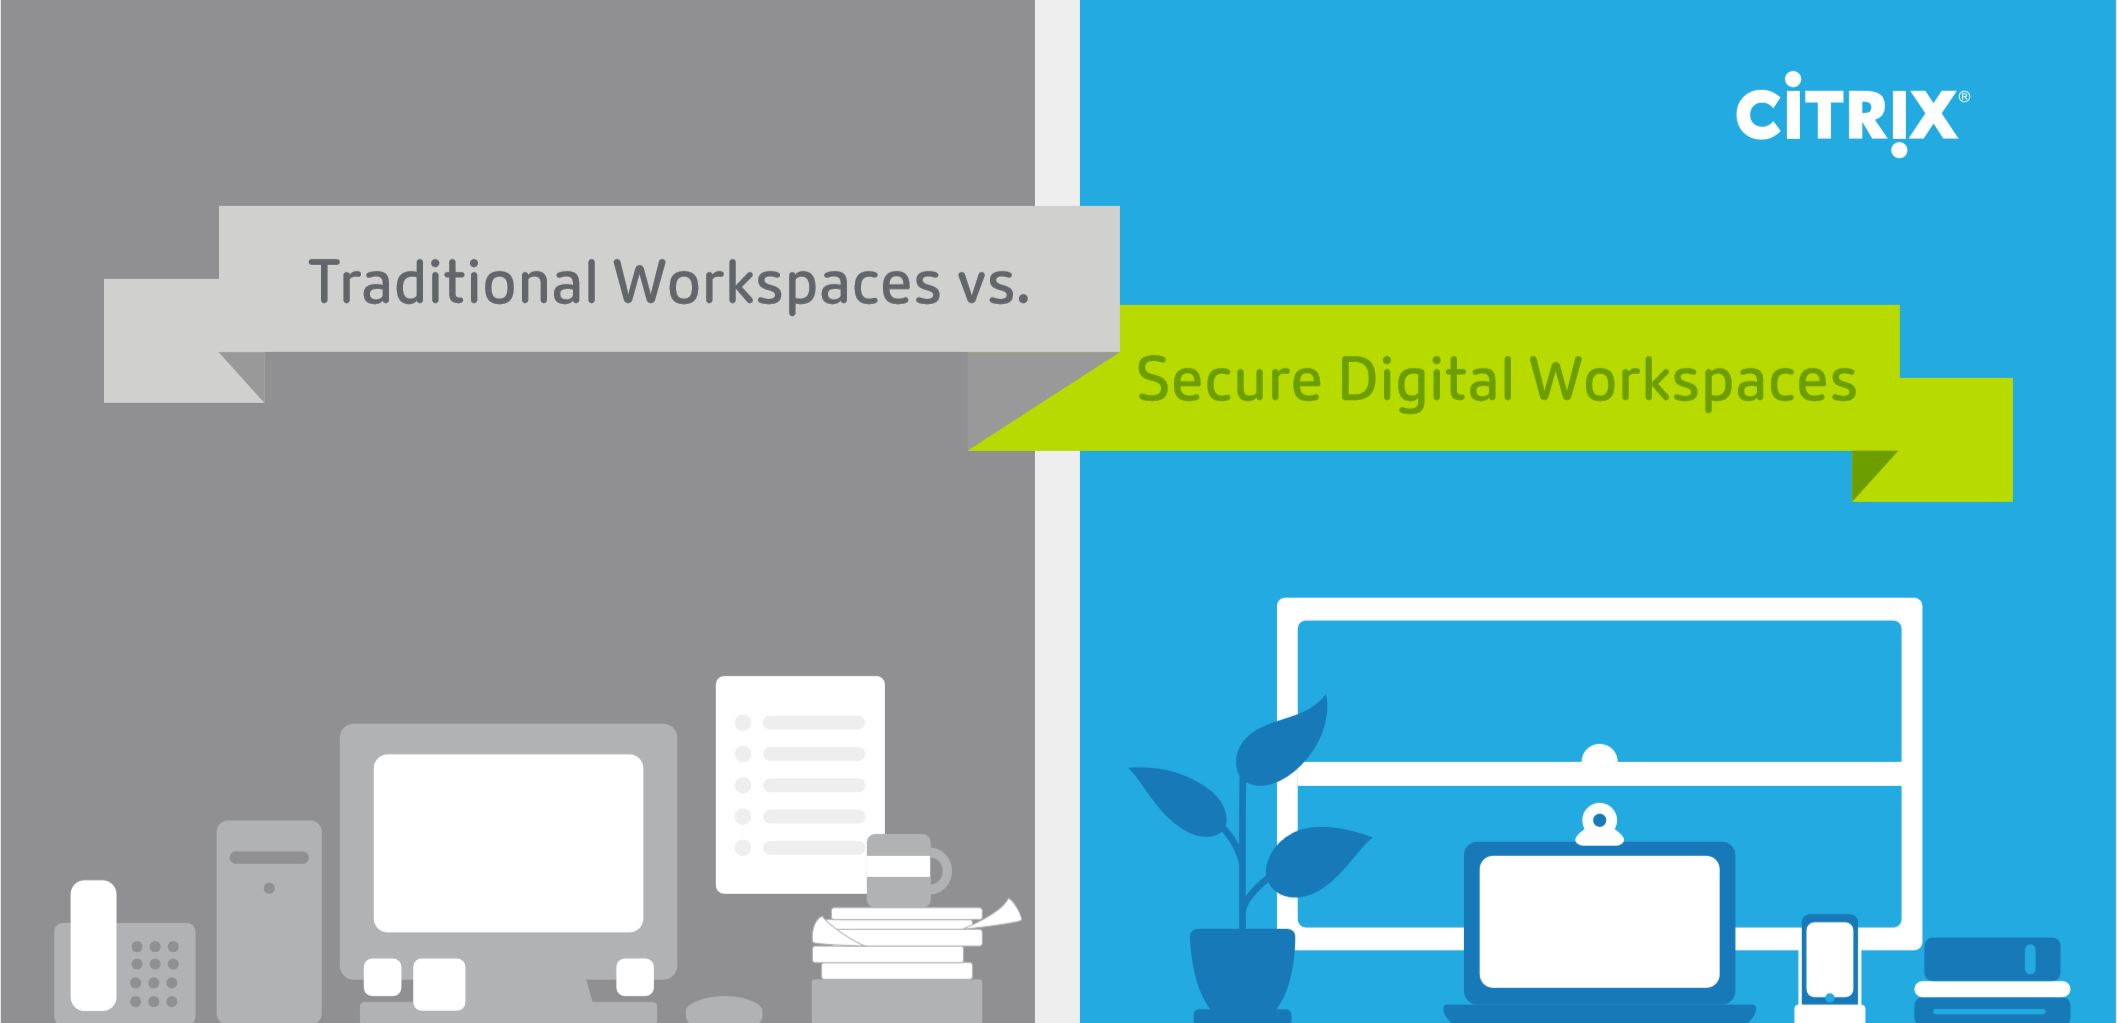 Traditional Workspaces vs. Secure Digital Workspaces